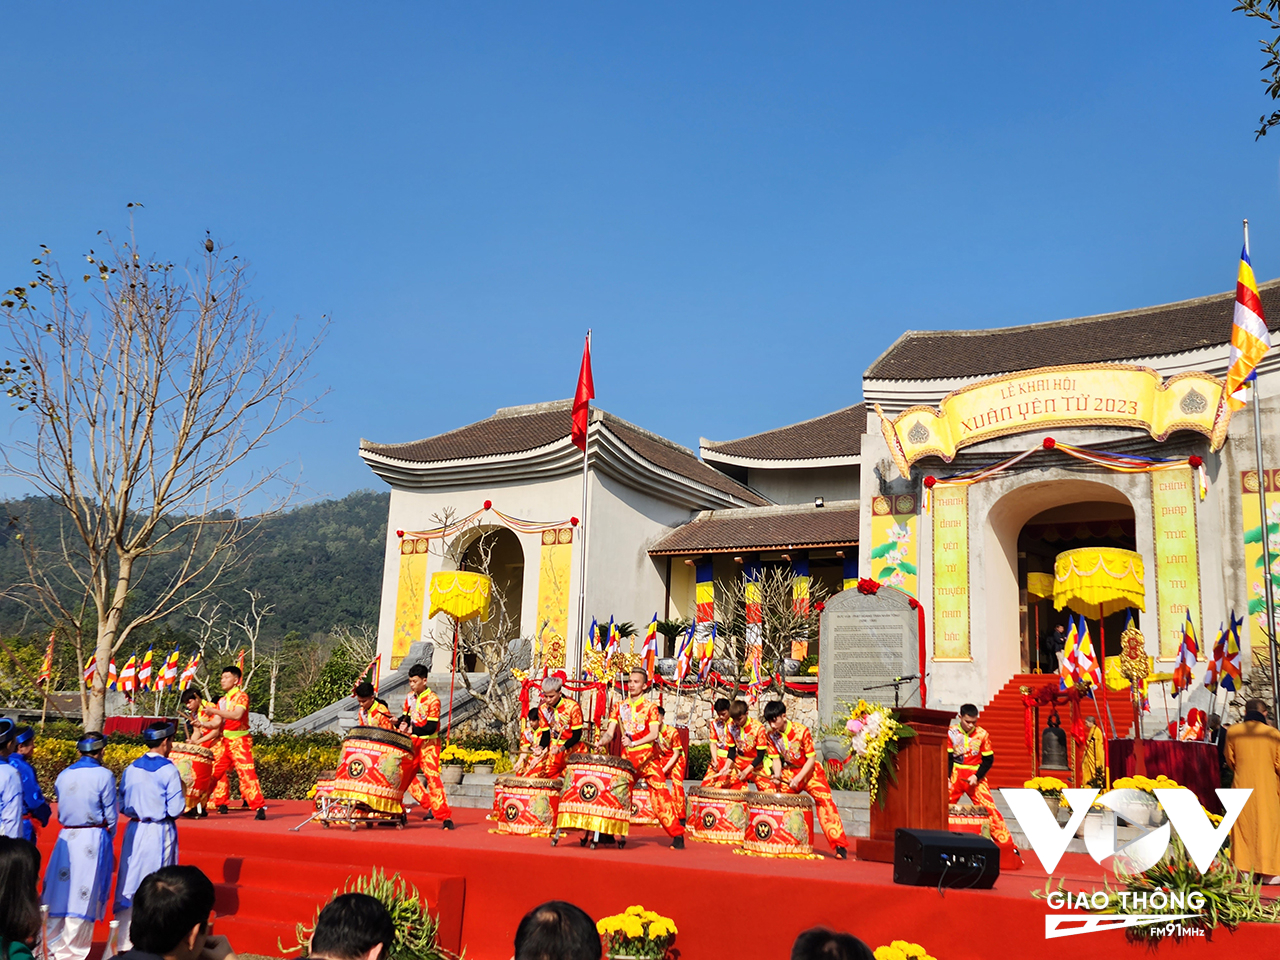 Lễ khai hội Xuân Yên Tử năm 2023 được tổ chức trang trọng, riêng phần hội hứa hẹn mang đến cho du khách không khí Xuân mới vui tươi, phấn khởi với nhiều hoạt động văn hóa lễ hội đặc sắc.